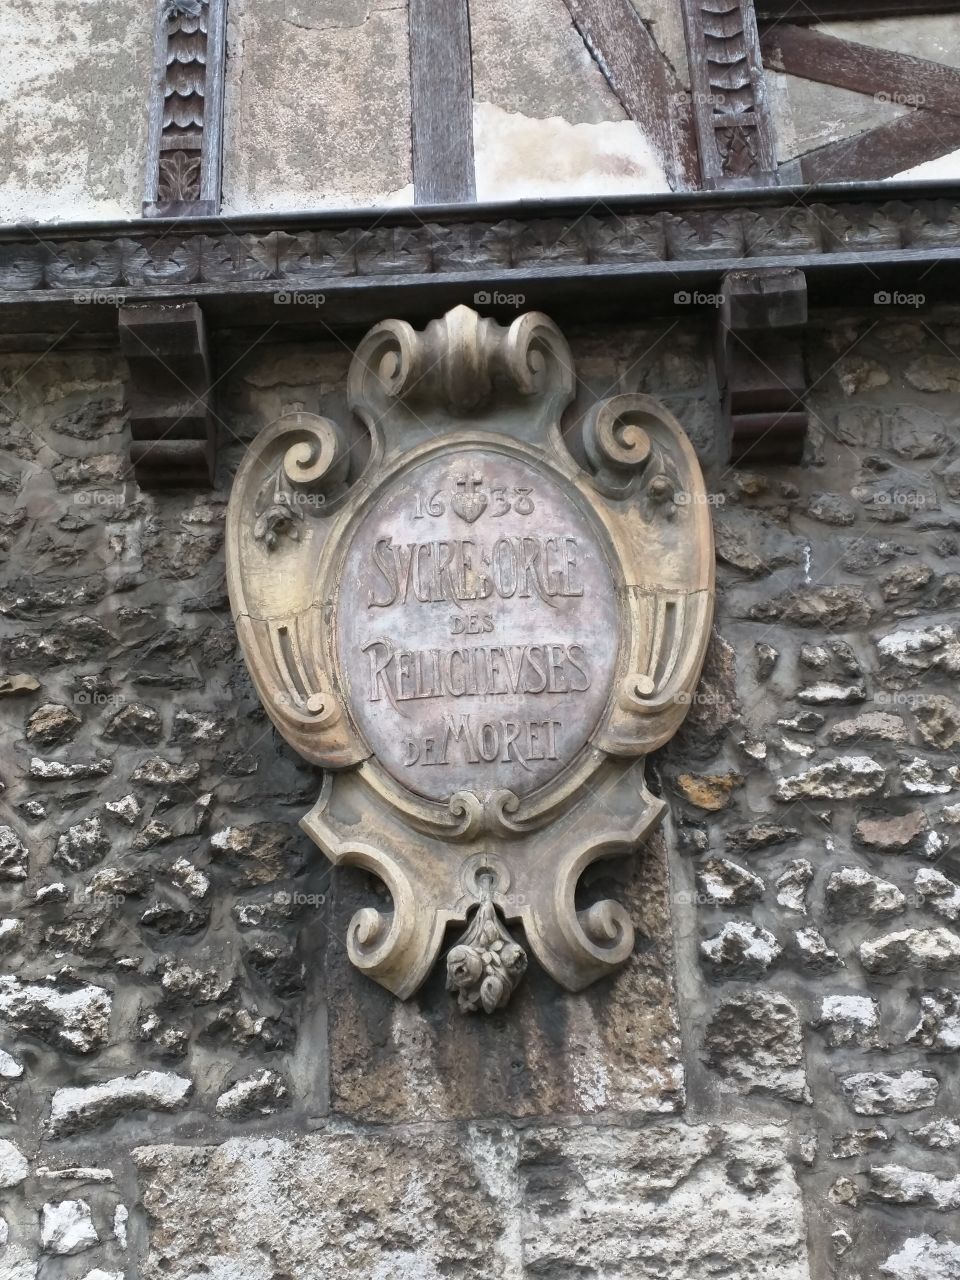 Coat of arms on the Maison du Sucre d'Orge (barley sugar) à Moret-sur-Loing, France